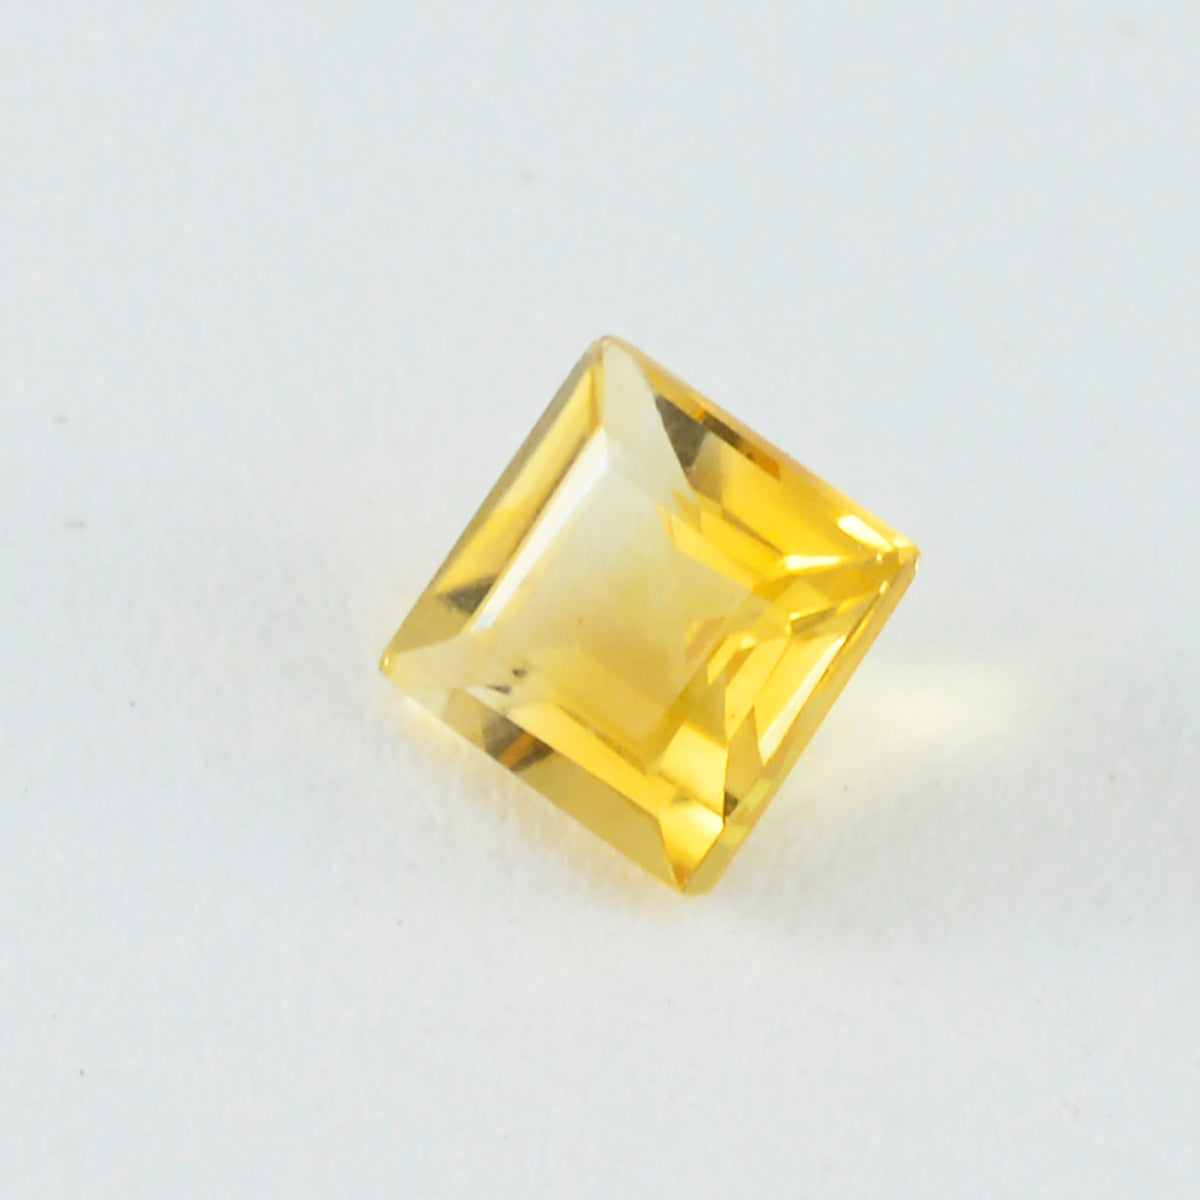 riyogems 1шт натуральный желтый цитрин ограненный 11x11 мм квадратной формы драгоценный камень отличного качества